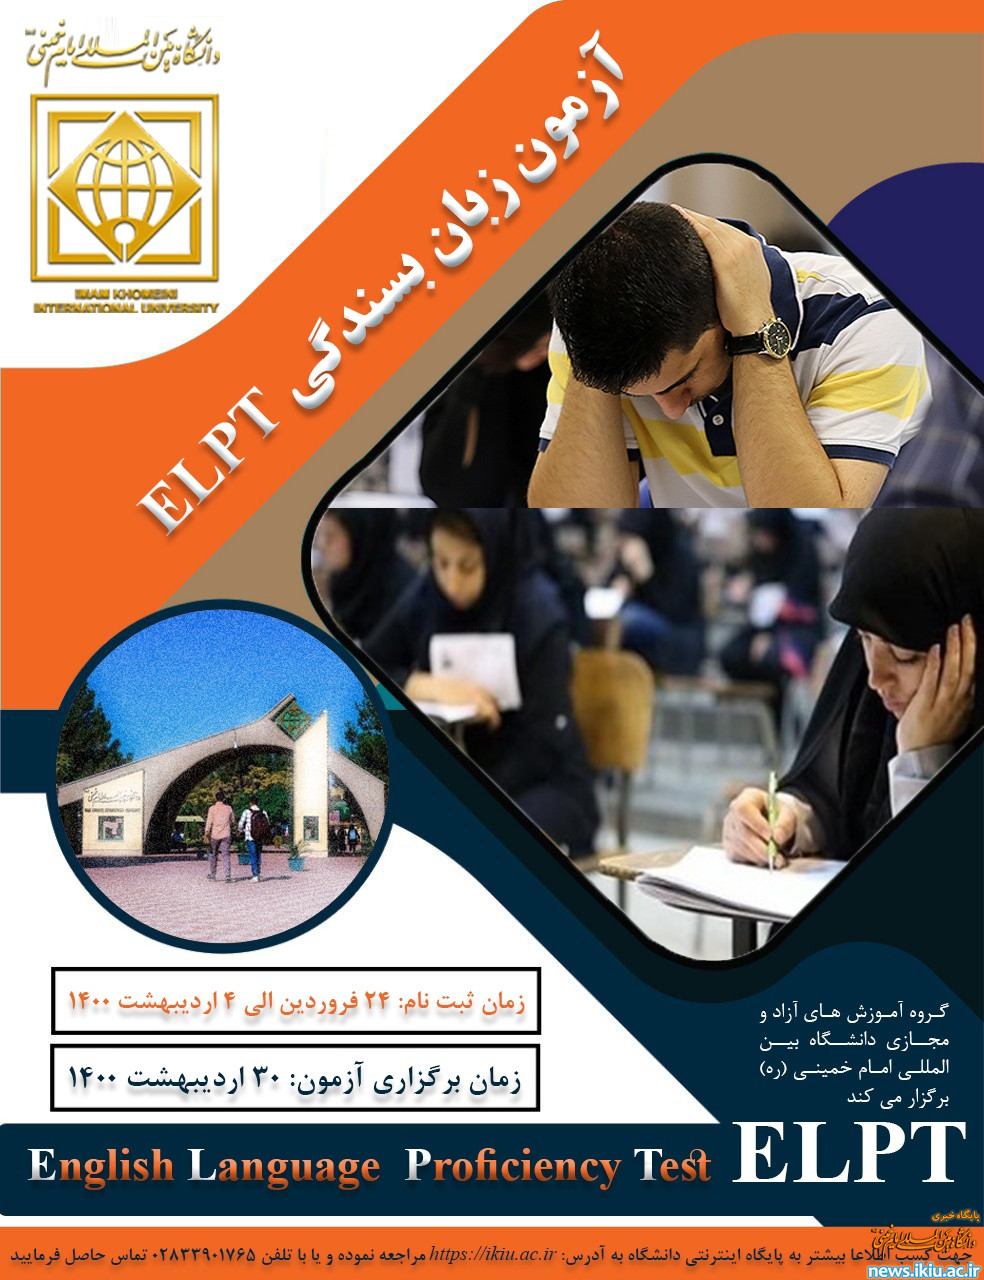 اطلاعيه ثبت نام دومین آزمون بسندگی زبان انگلیسی (ELPT) دانشگاه بین المللی امام خمینی(ره)